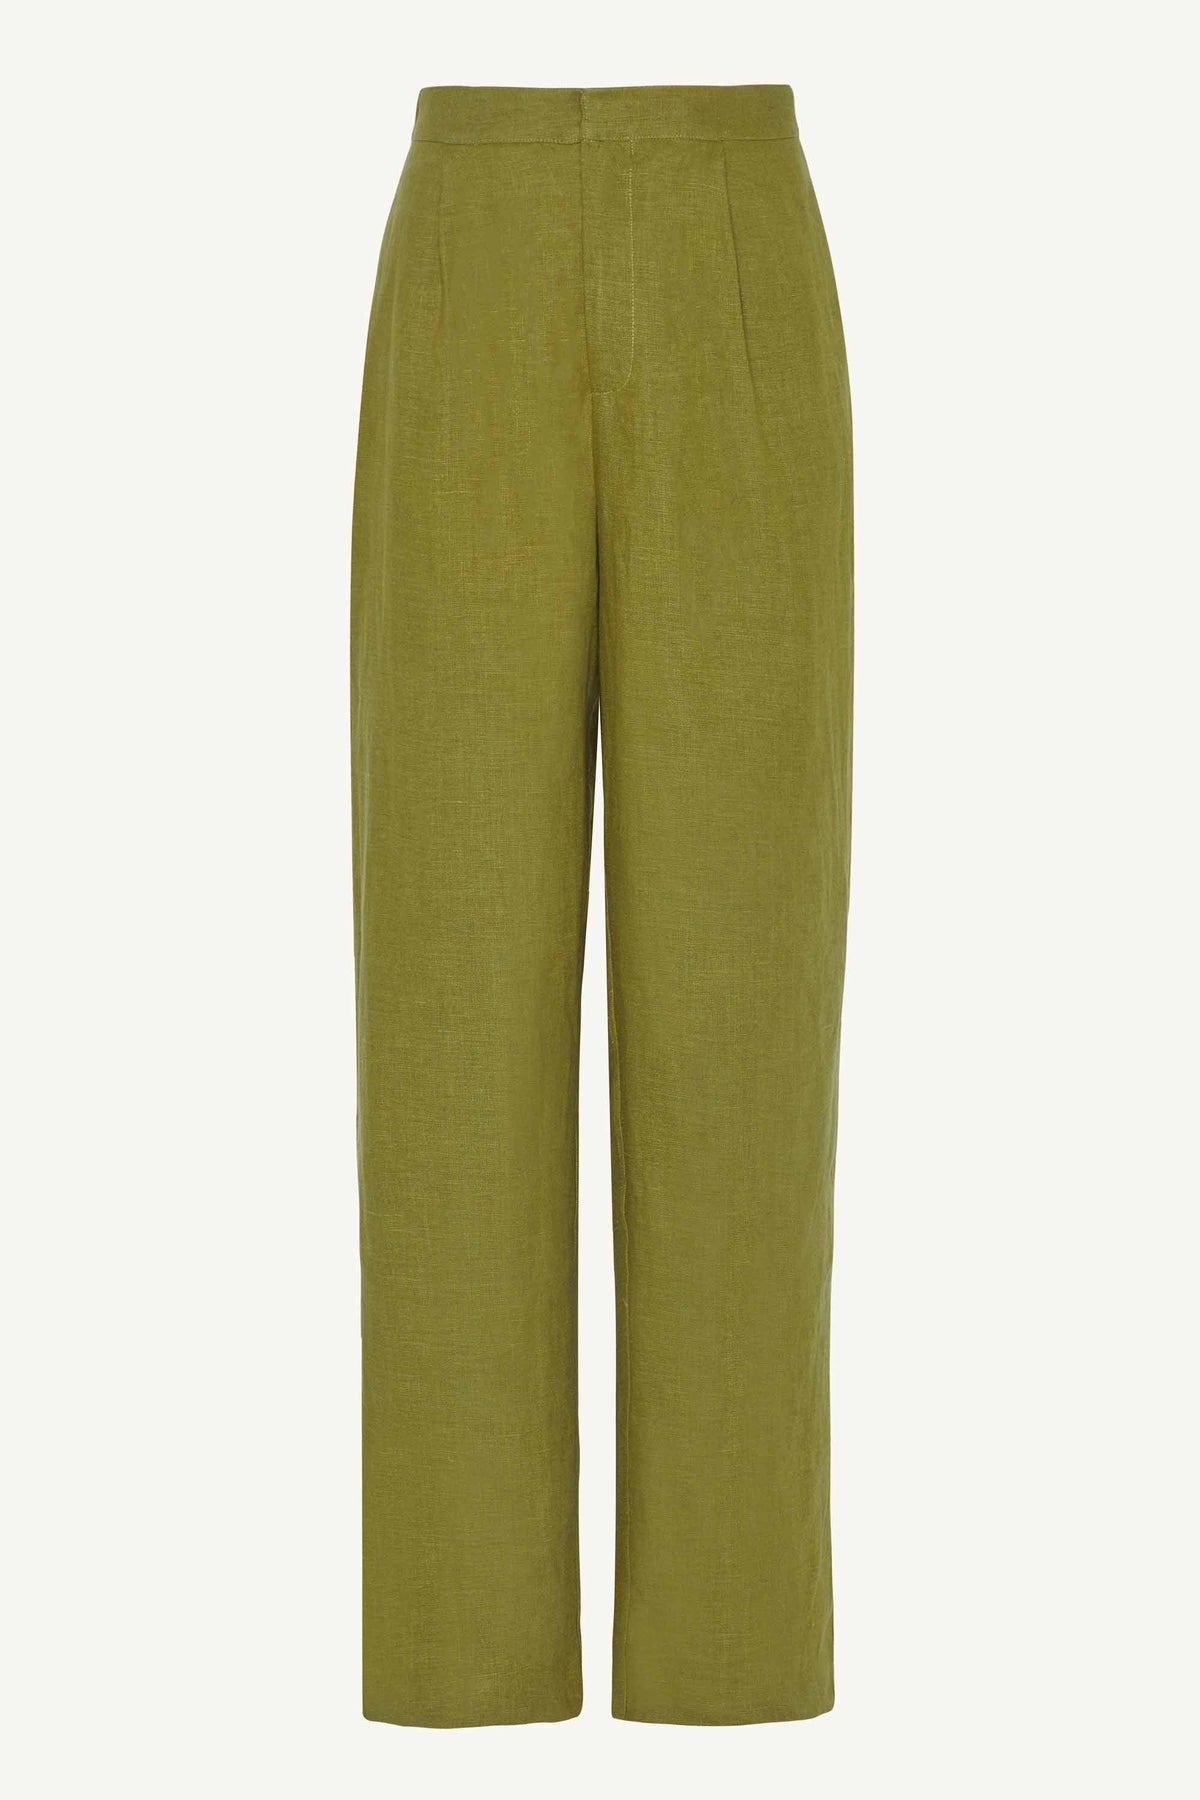 Linen Straight Leg Pants - Avocado Clothing epschoolboard 